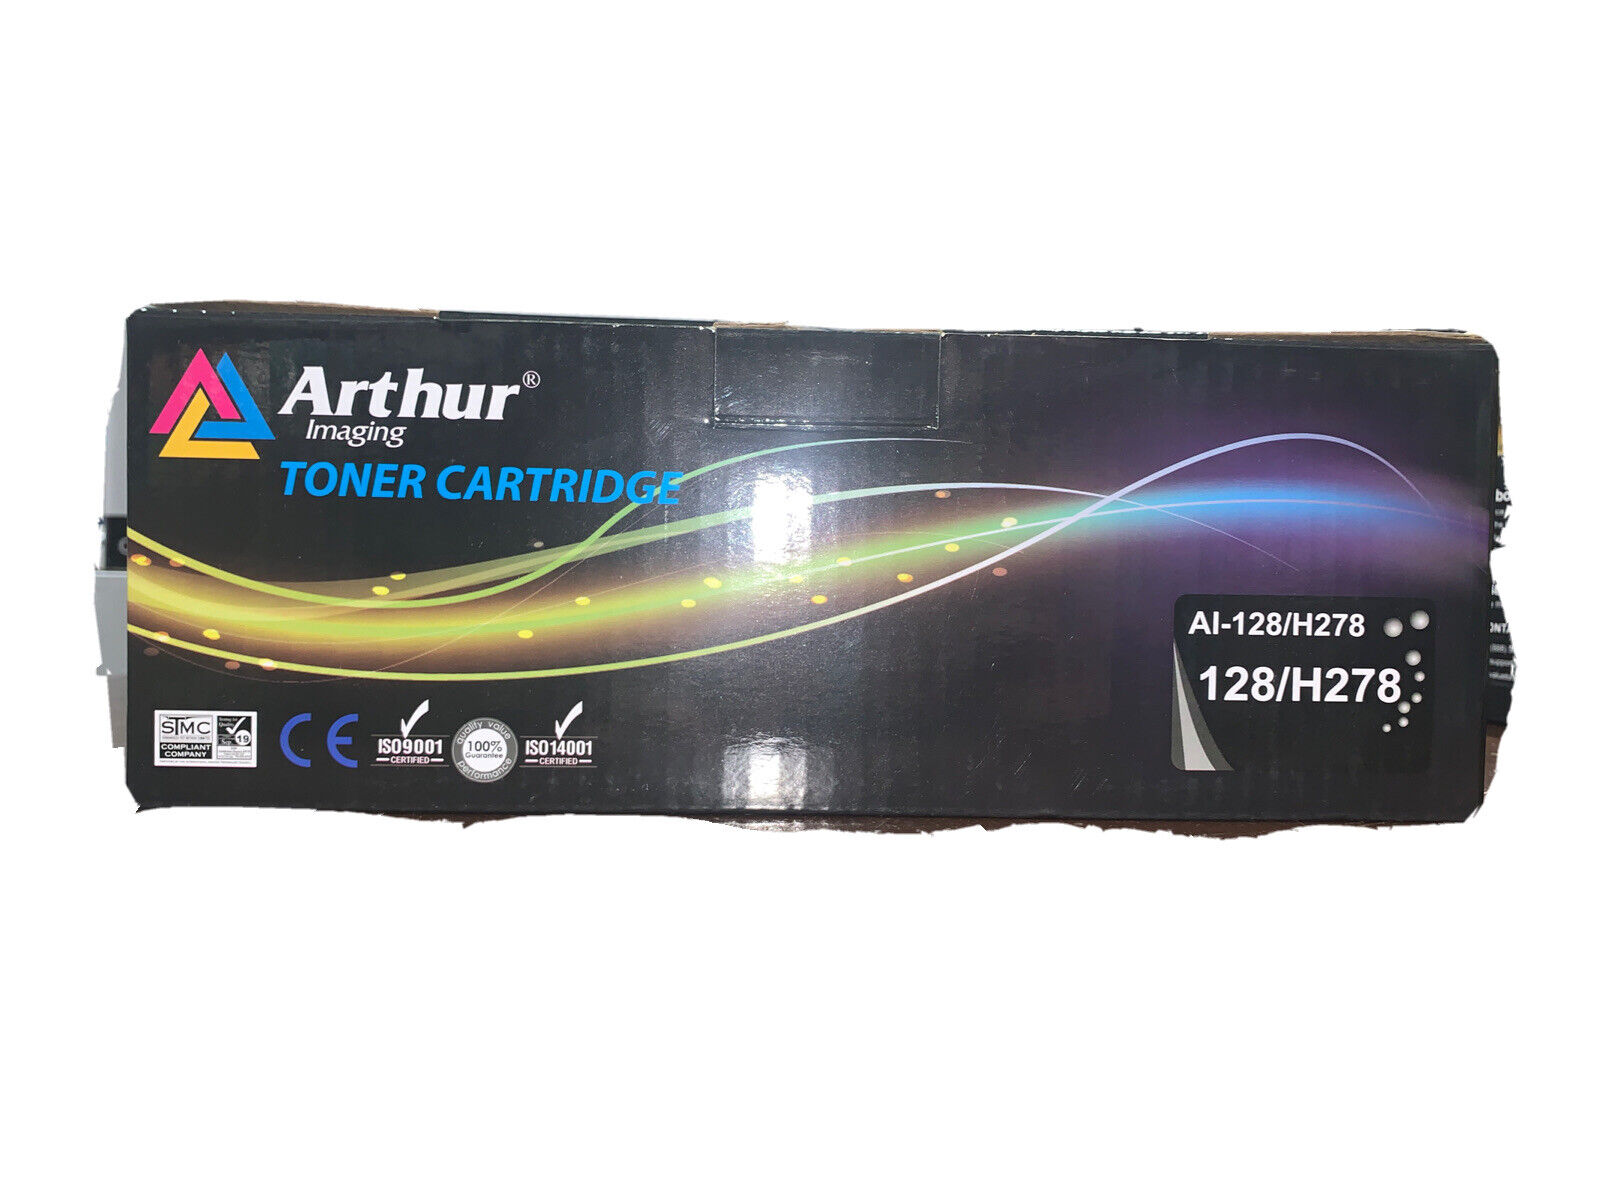 Arthur Imaging Toner Cartridge Al-128/H278 